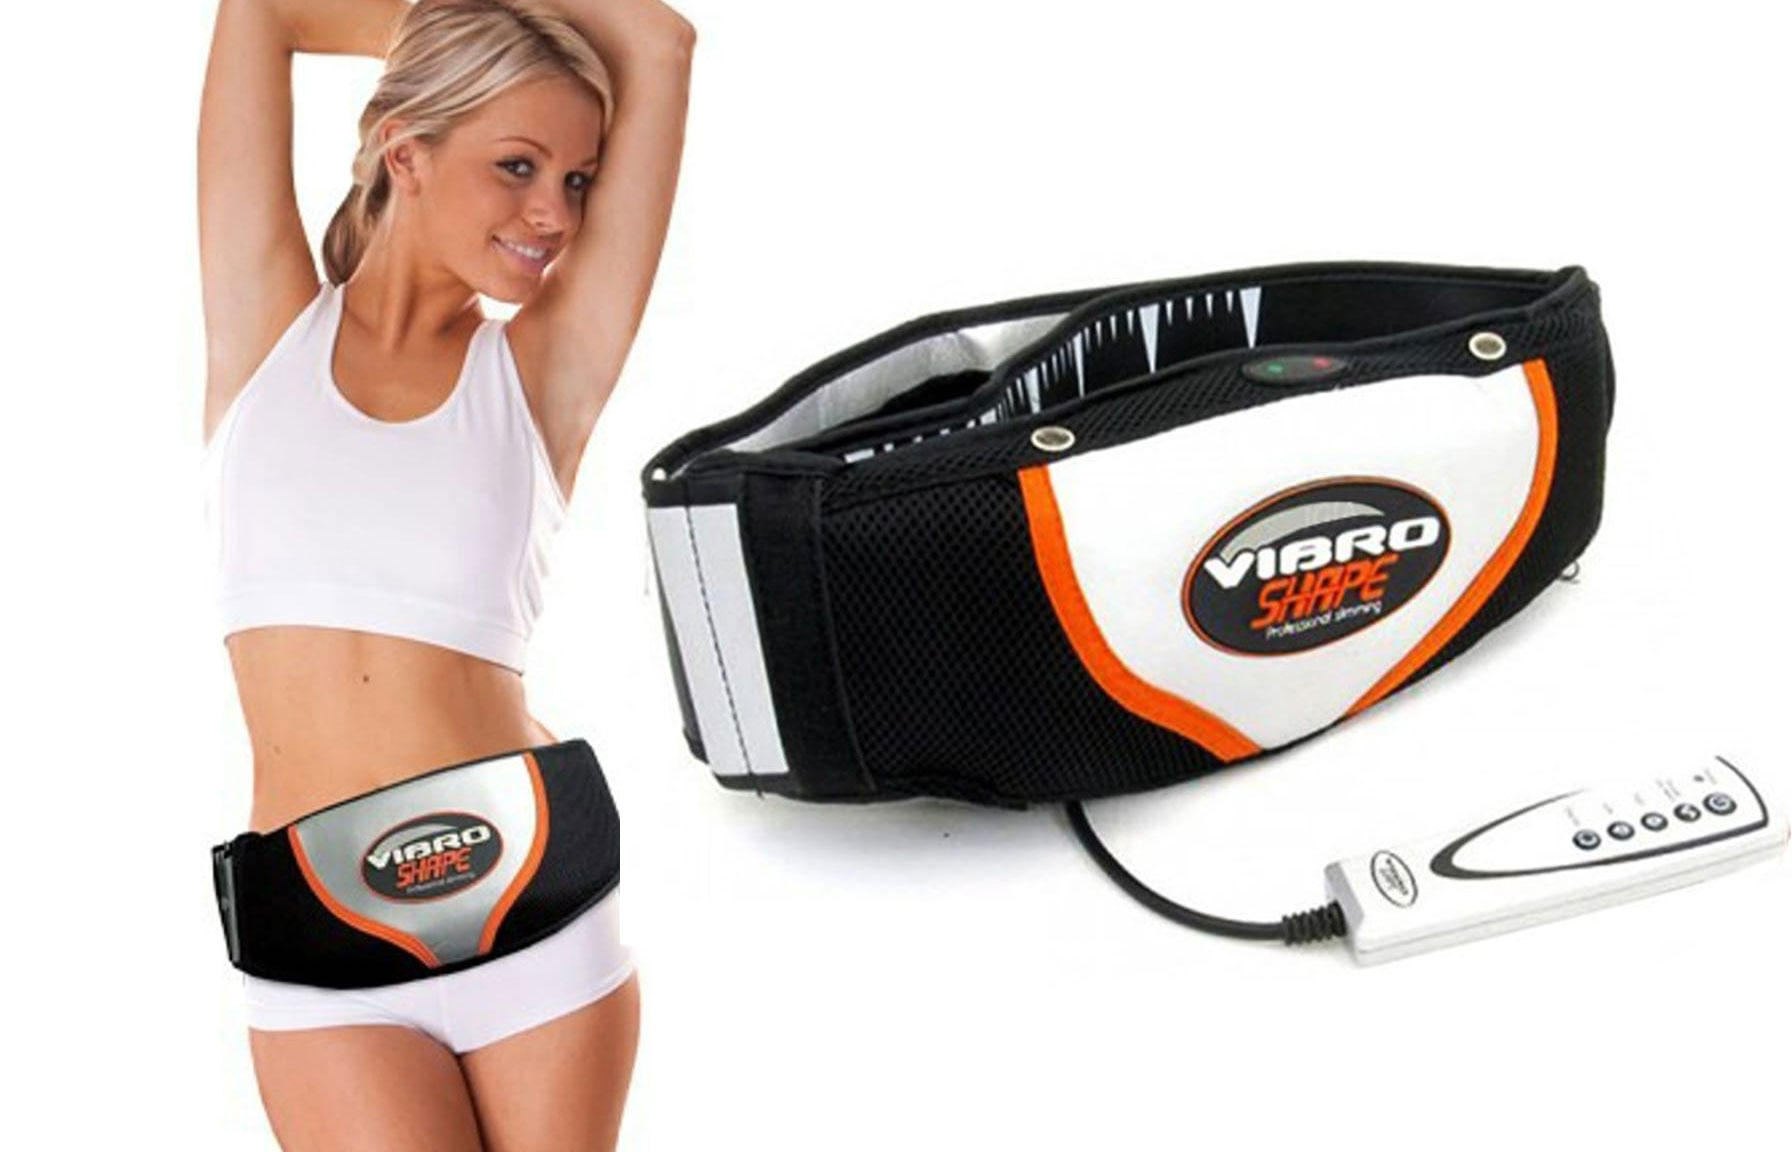 Giảm mỡ bụng an toàn và hiệu quả nhờ Vibro Shape Perfect